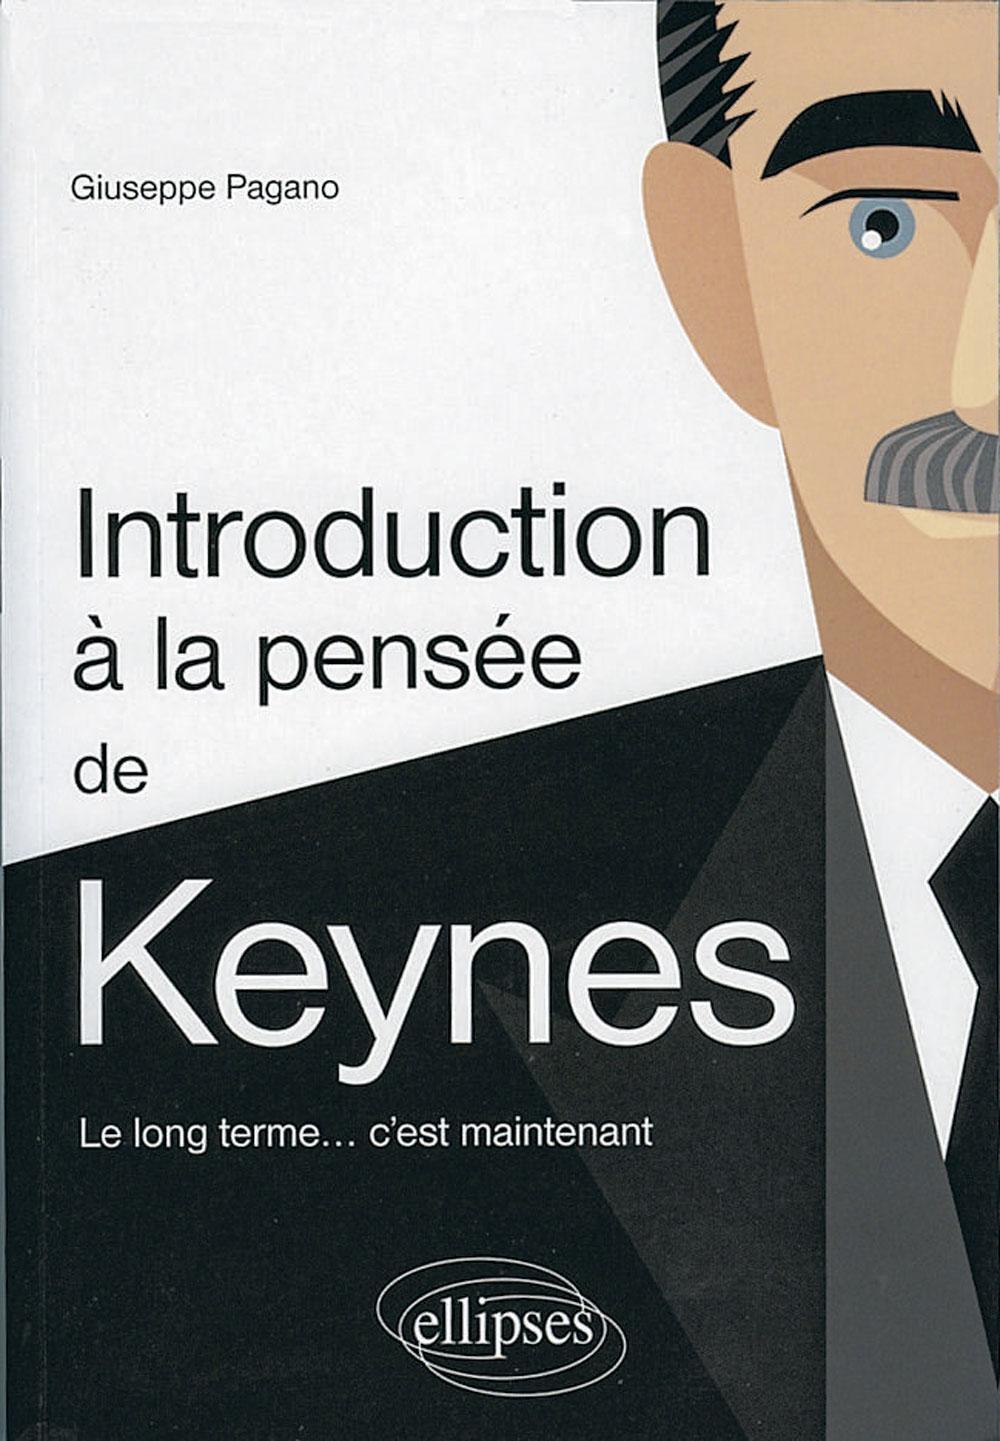 Introduction à la pensée économique de Keynes. Le long terme... c'est maintenant, par Giuseppe Pagano, Ellipses, 330 p.